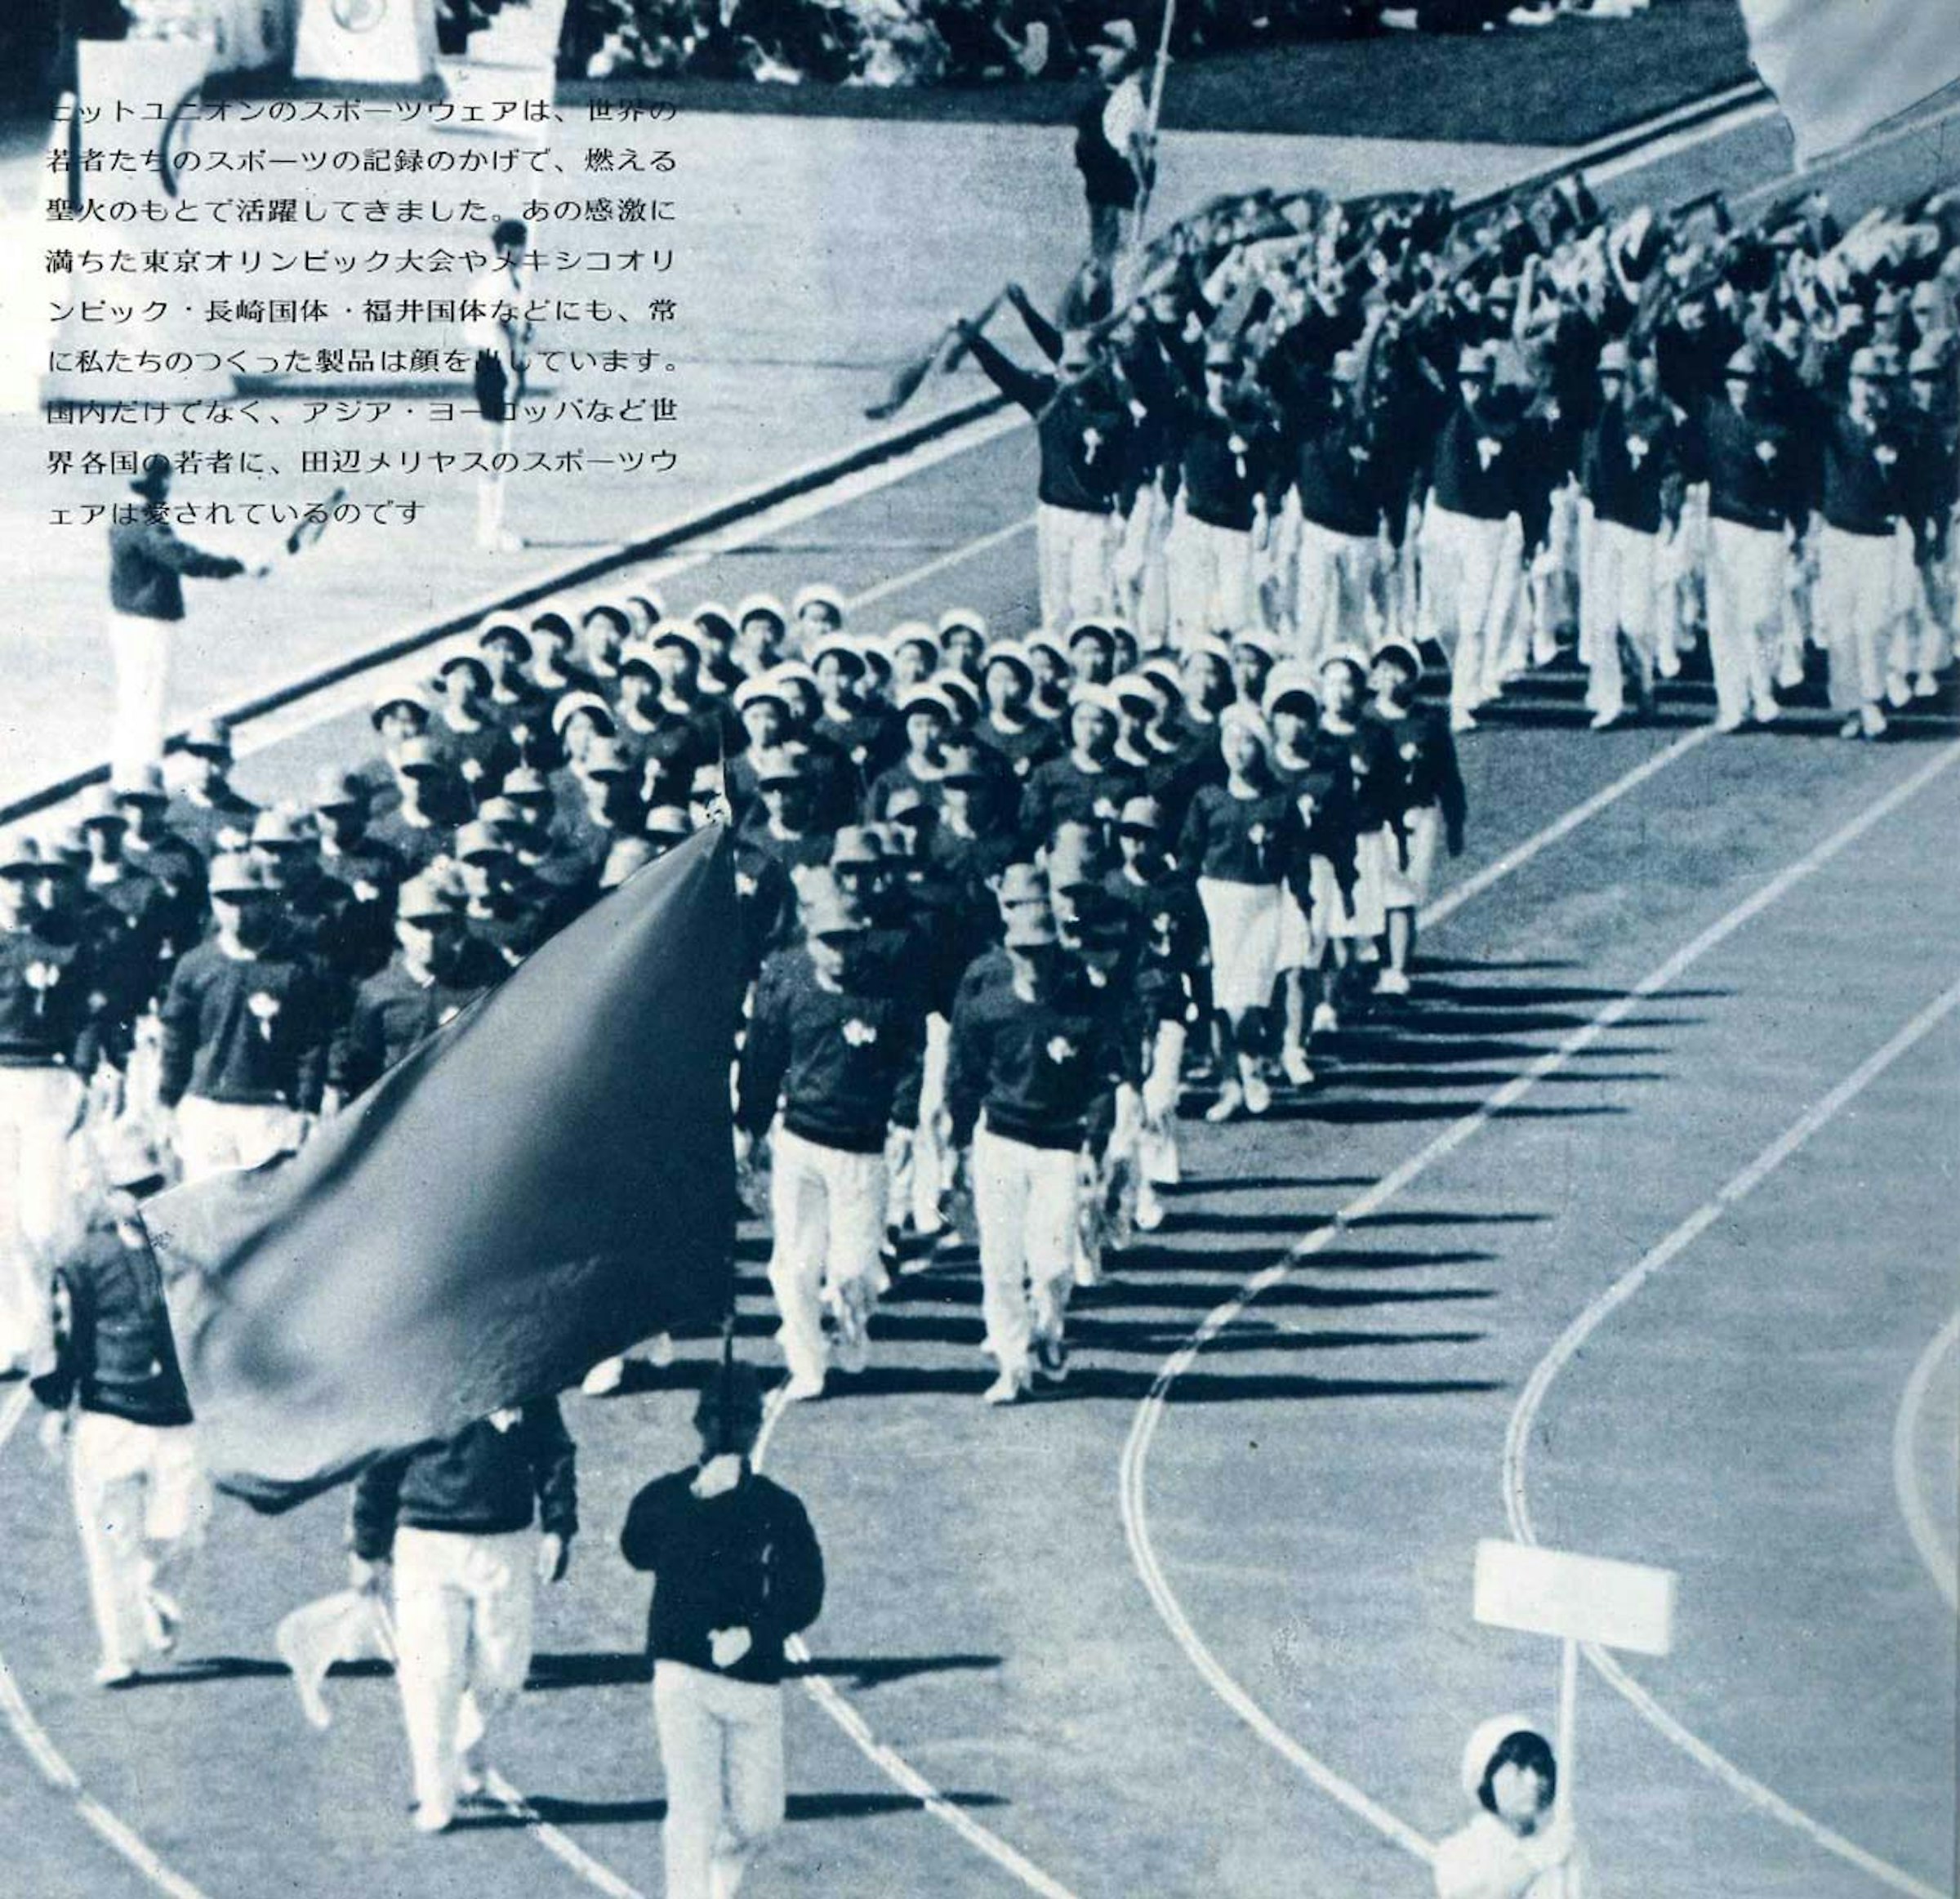 ヒットユニオン株式会社に保管されている資料　1964年、東京大会日本選手団入場の様子